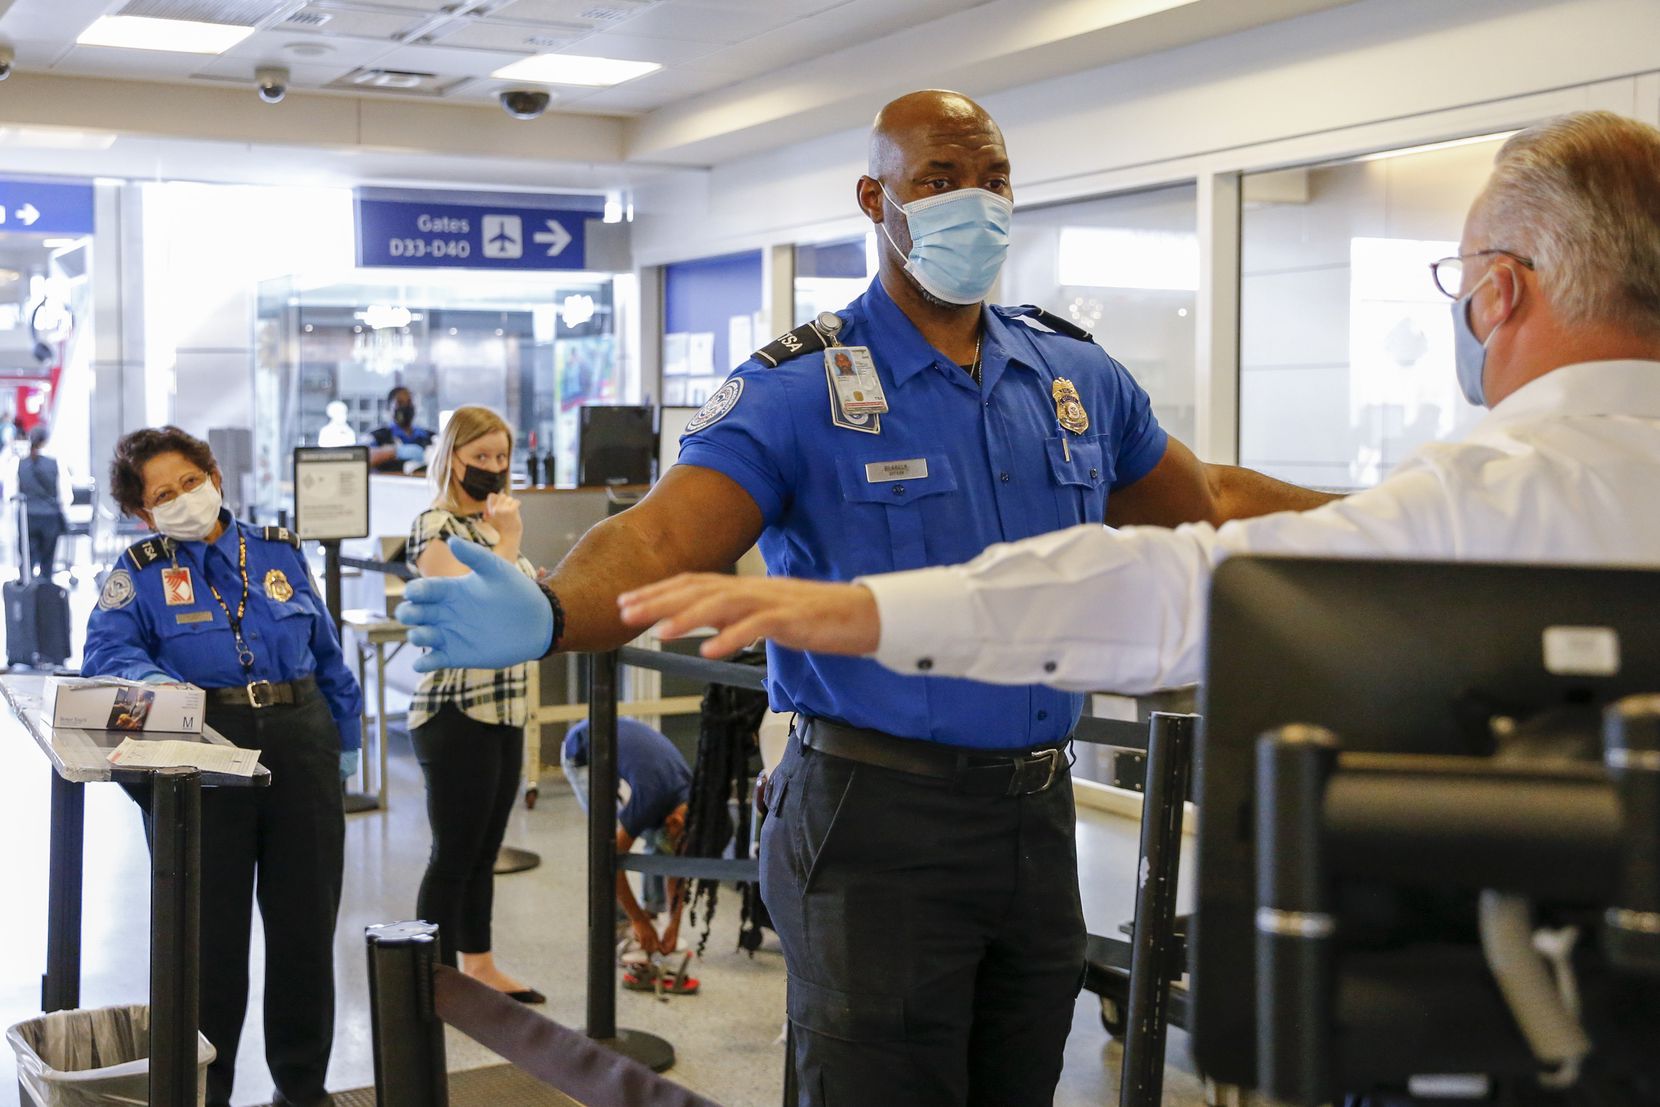 Se buscan 6 vigilantes de seguridad para trabajar en el aeropuerto